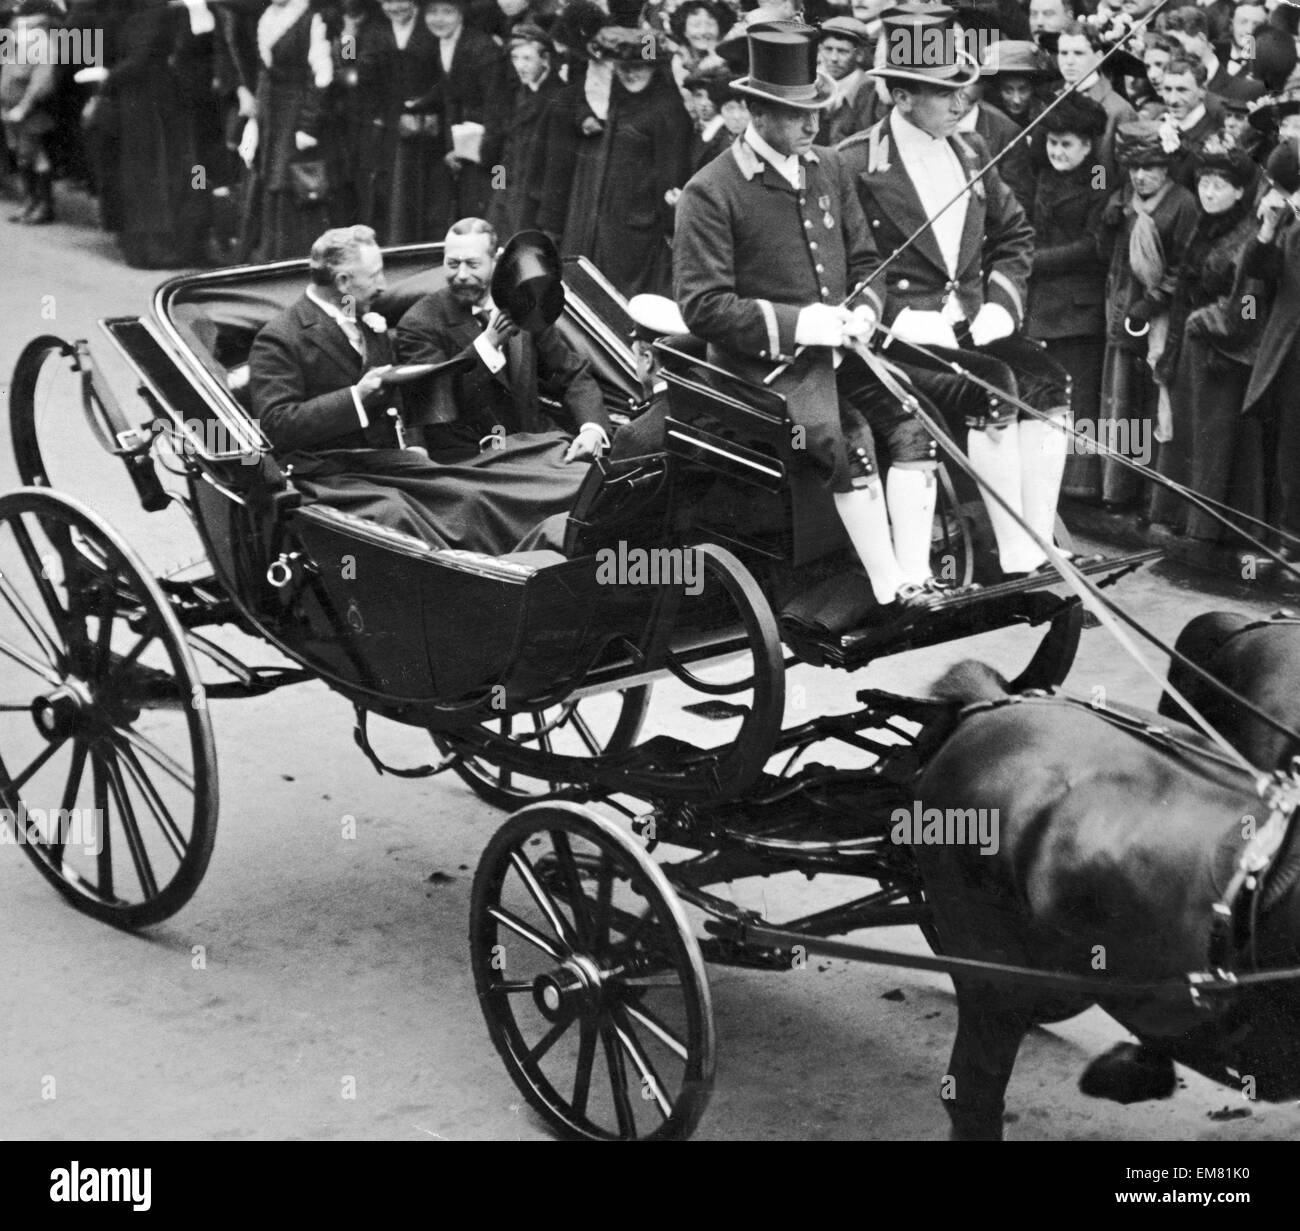 Le roi George V vu ici avec l'empereur Guillaume II, en route vers le palais de Buckingham au cours de l'empereur allemand dans le cadre de sa visite officielle en Grande-Bretagne. 16 Mai 1911 Banque D'Images